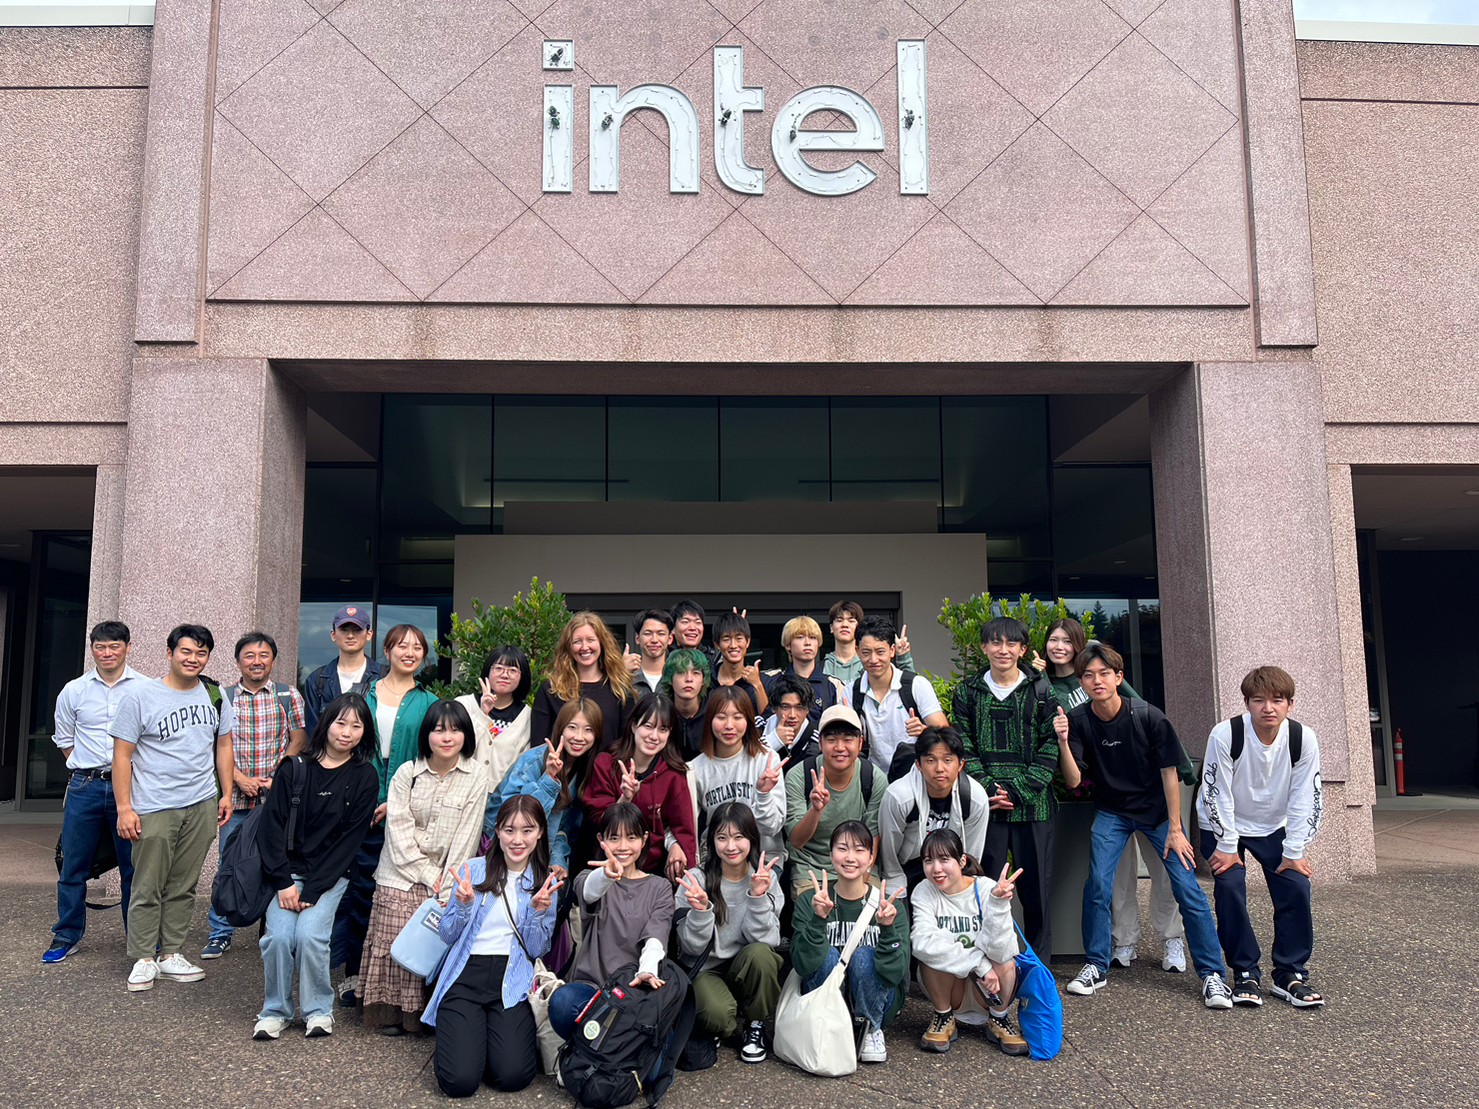 Students at Intel